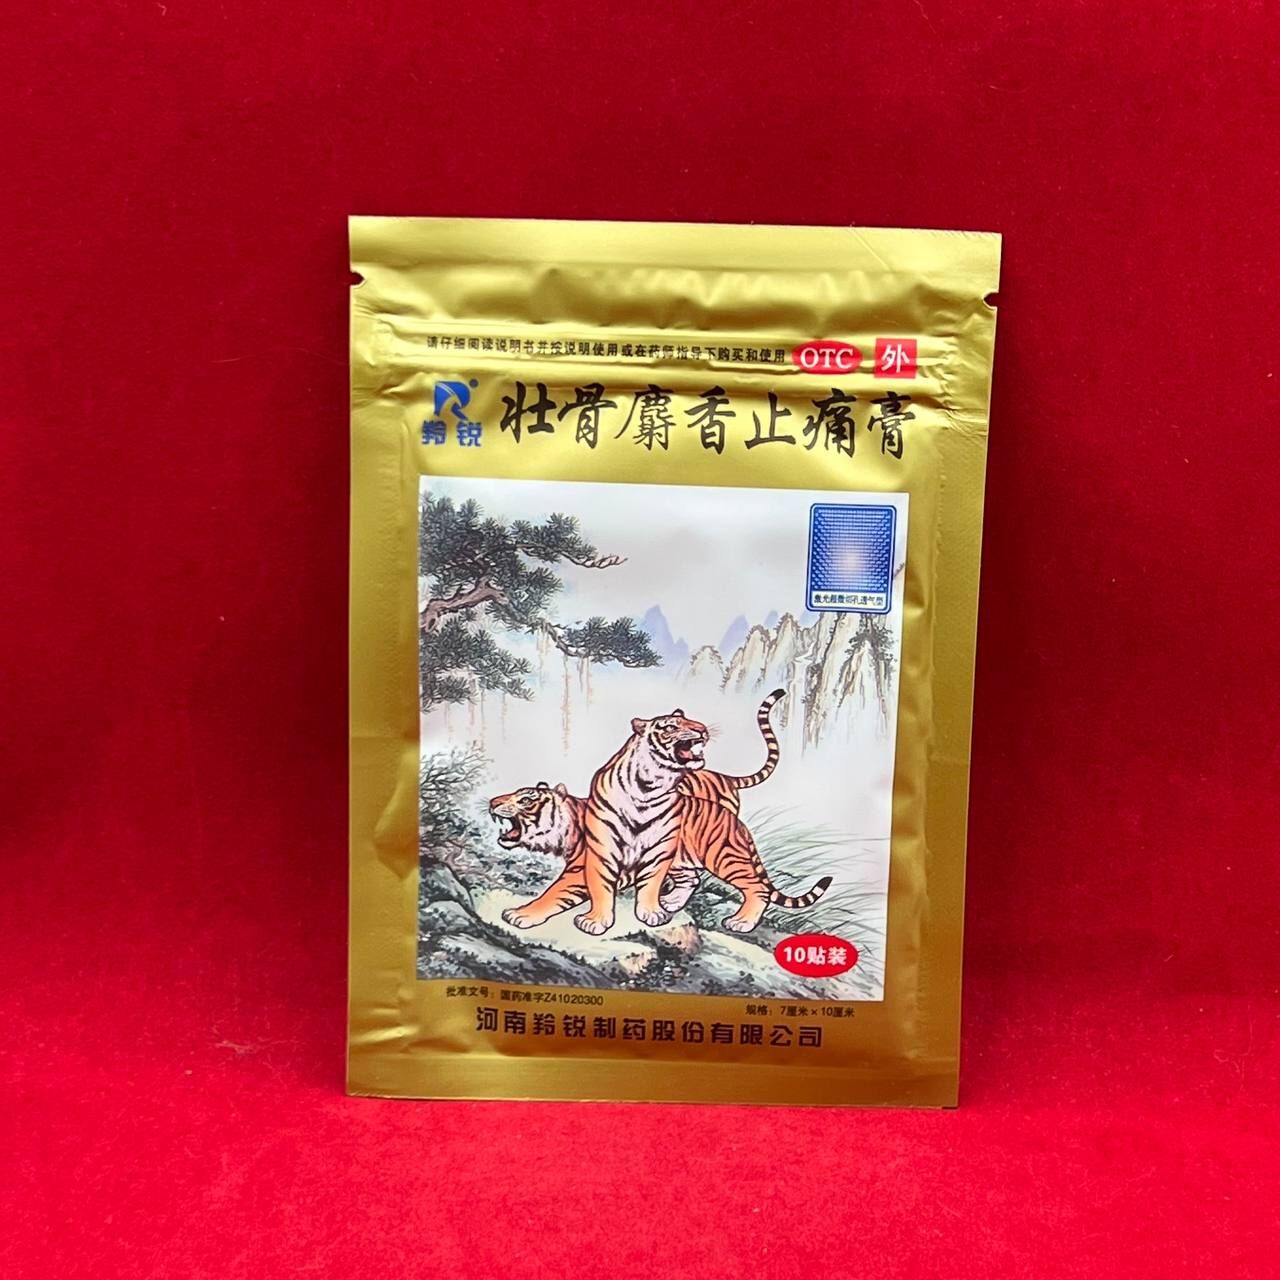 Пластырь смягчающий и болеутоляющий Тигр мускусный Zhuanggu Shexiang Zhitong Gao